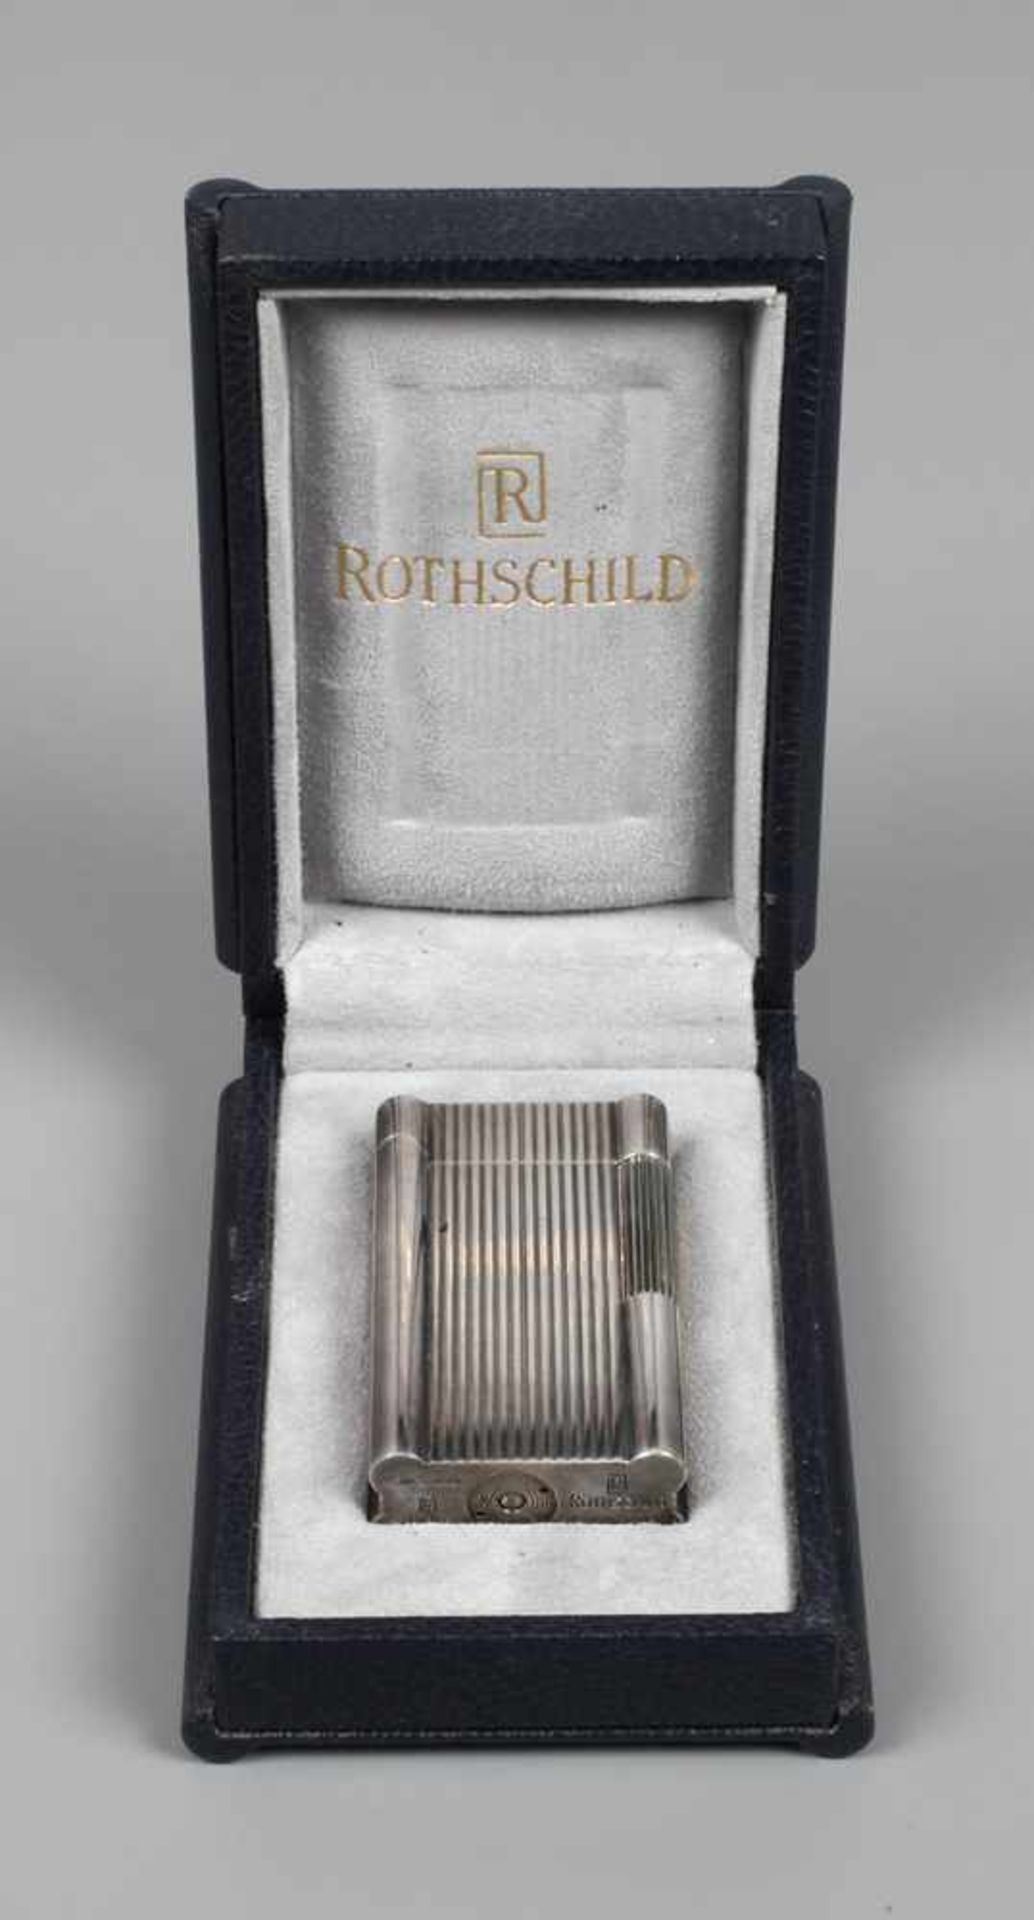 Feuerzeug Rothschild 20. Jh., an der Unterseite gemarkt Rothschild und nummeriert OA 0251,